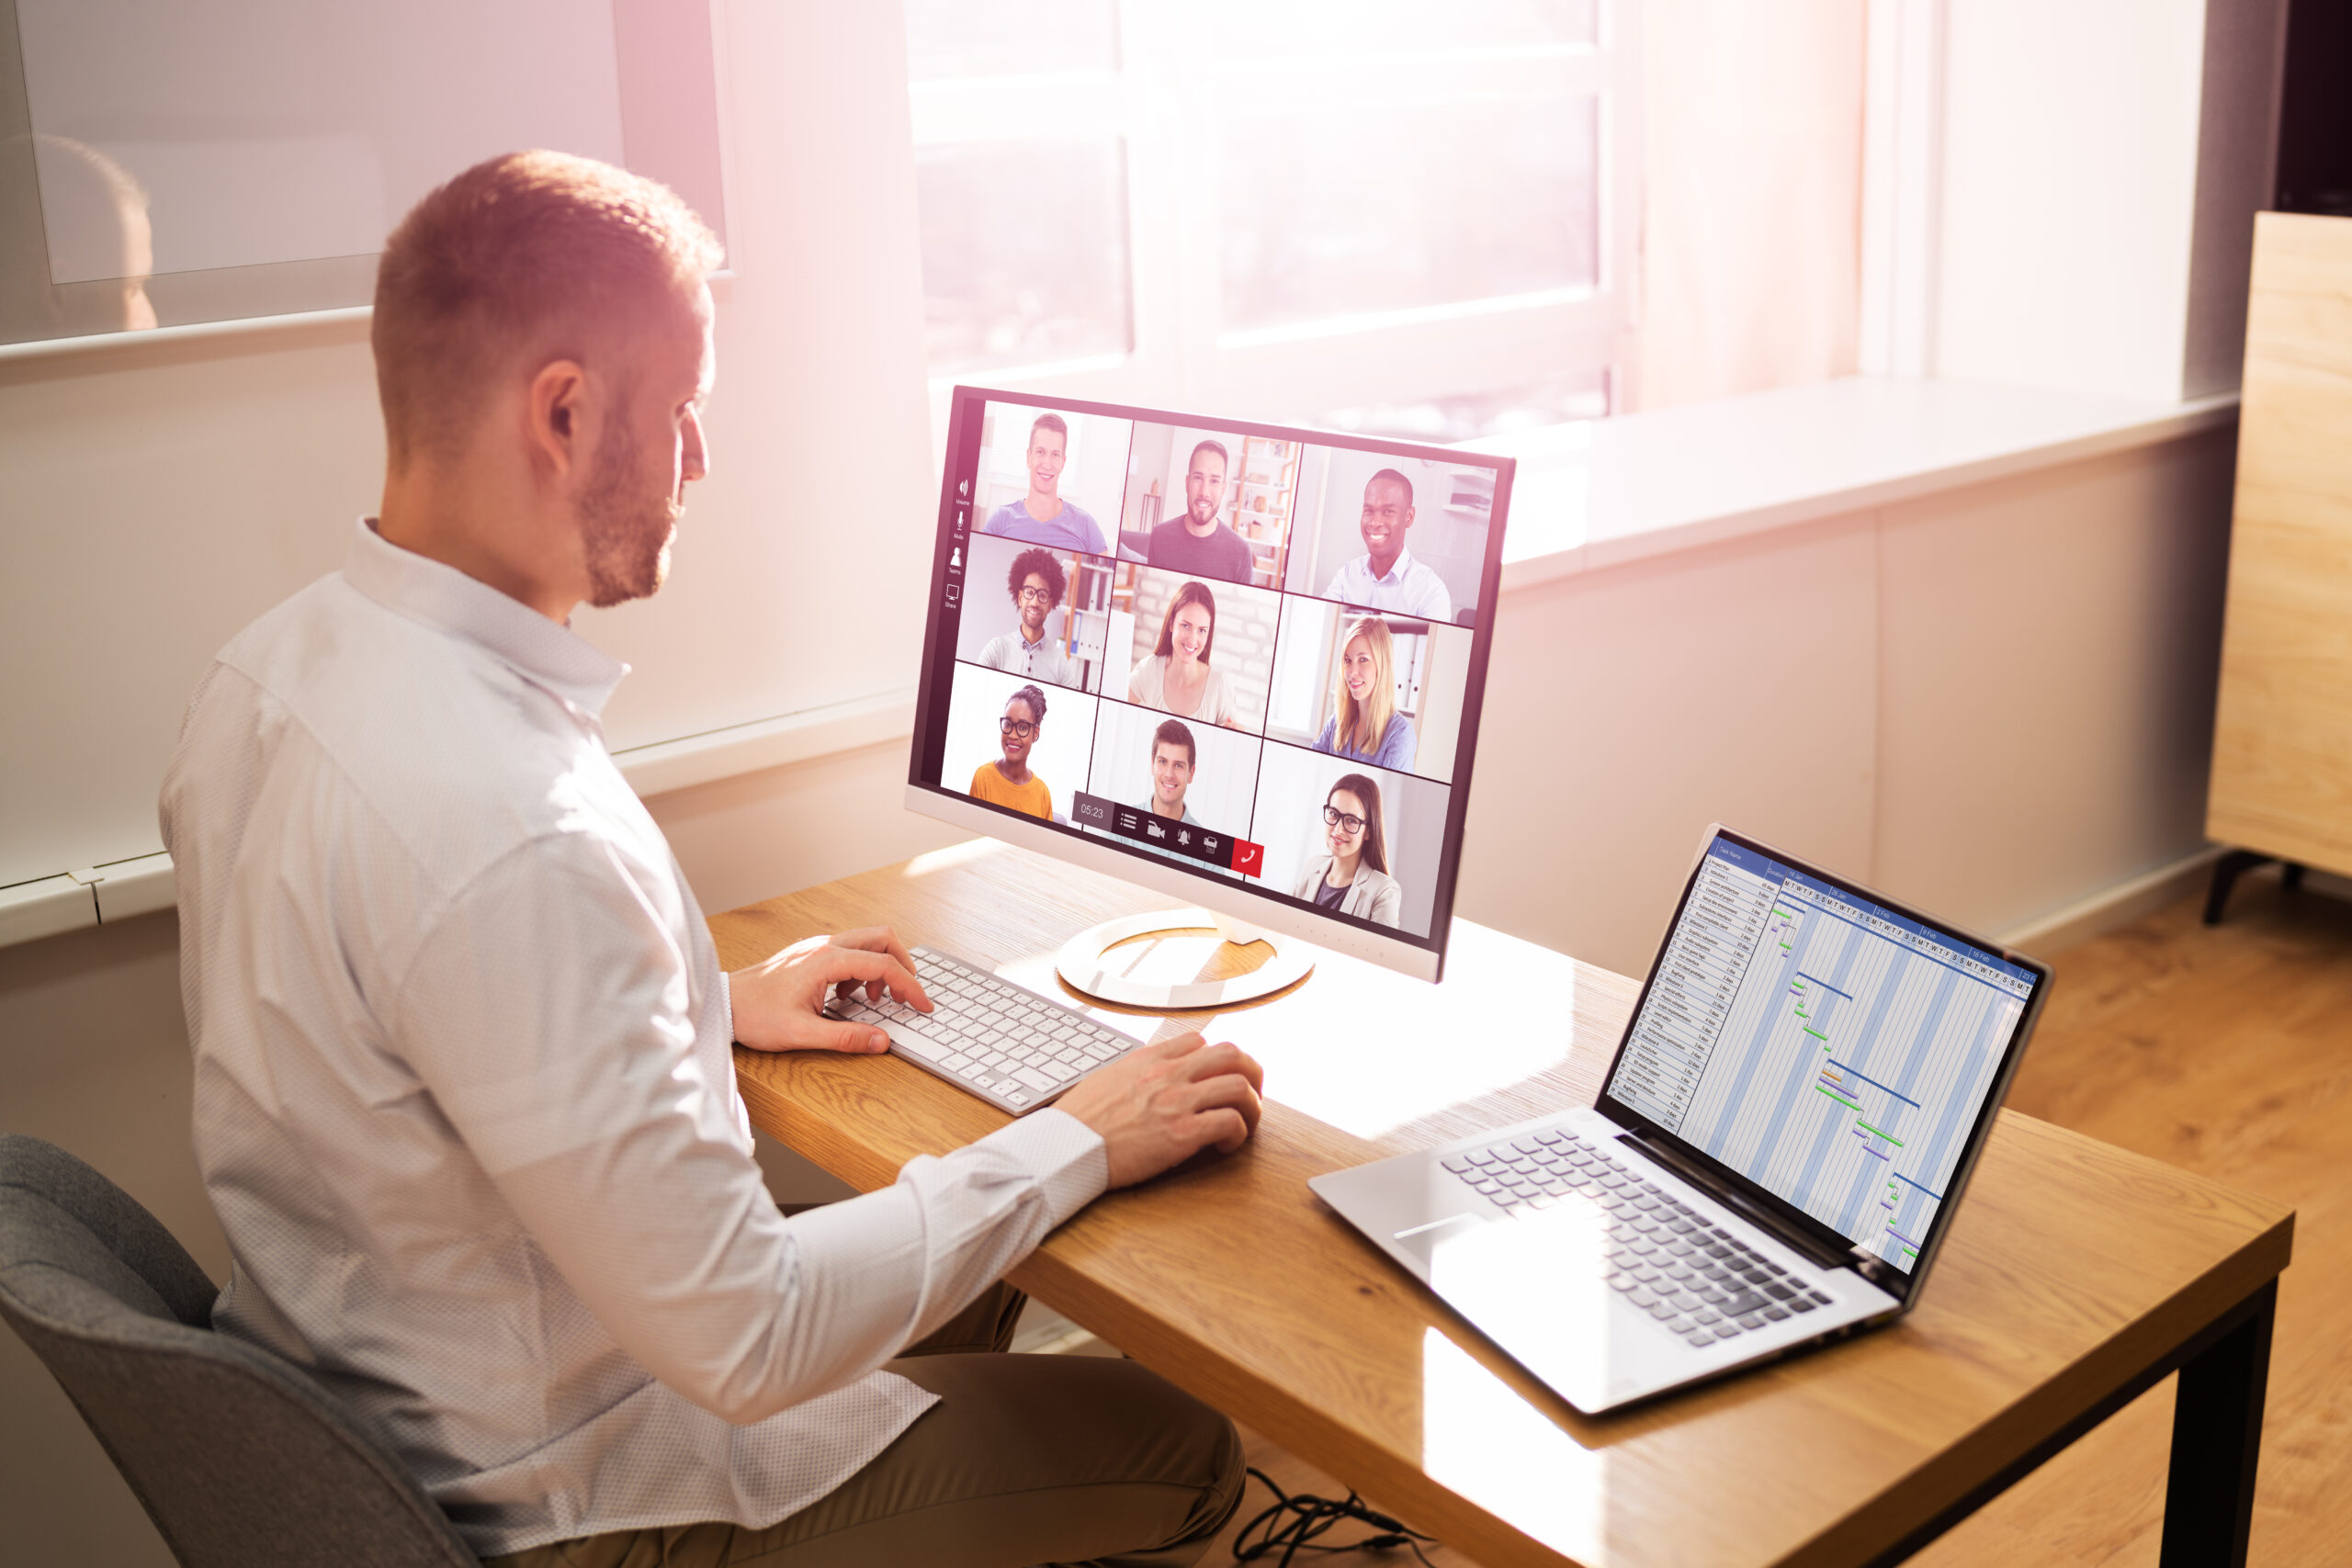 Virtuelle Meetings mit Kollegen:innen aus der ganzen Welt gehören mittlerweile zum Arbeitsalltag in vielen Unternehmen.